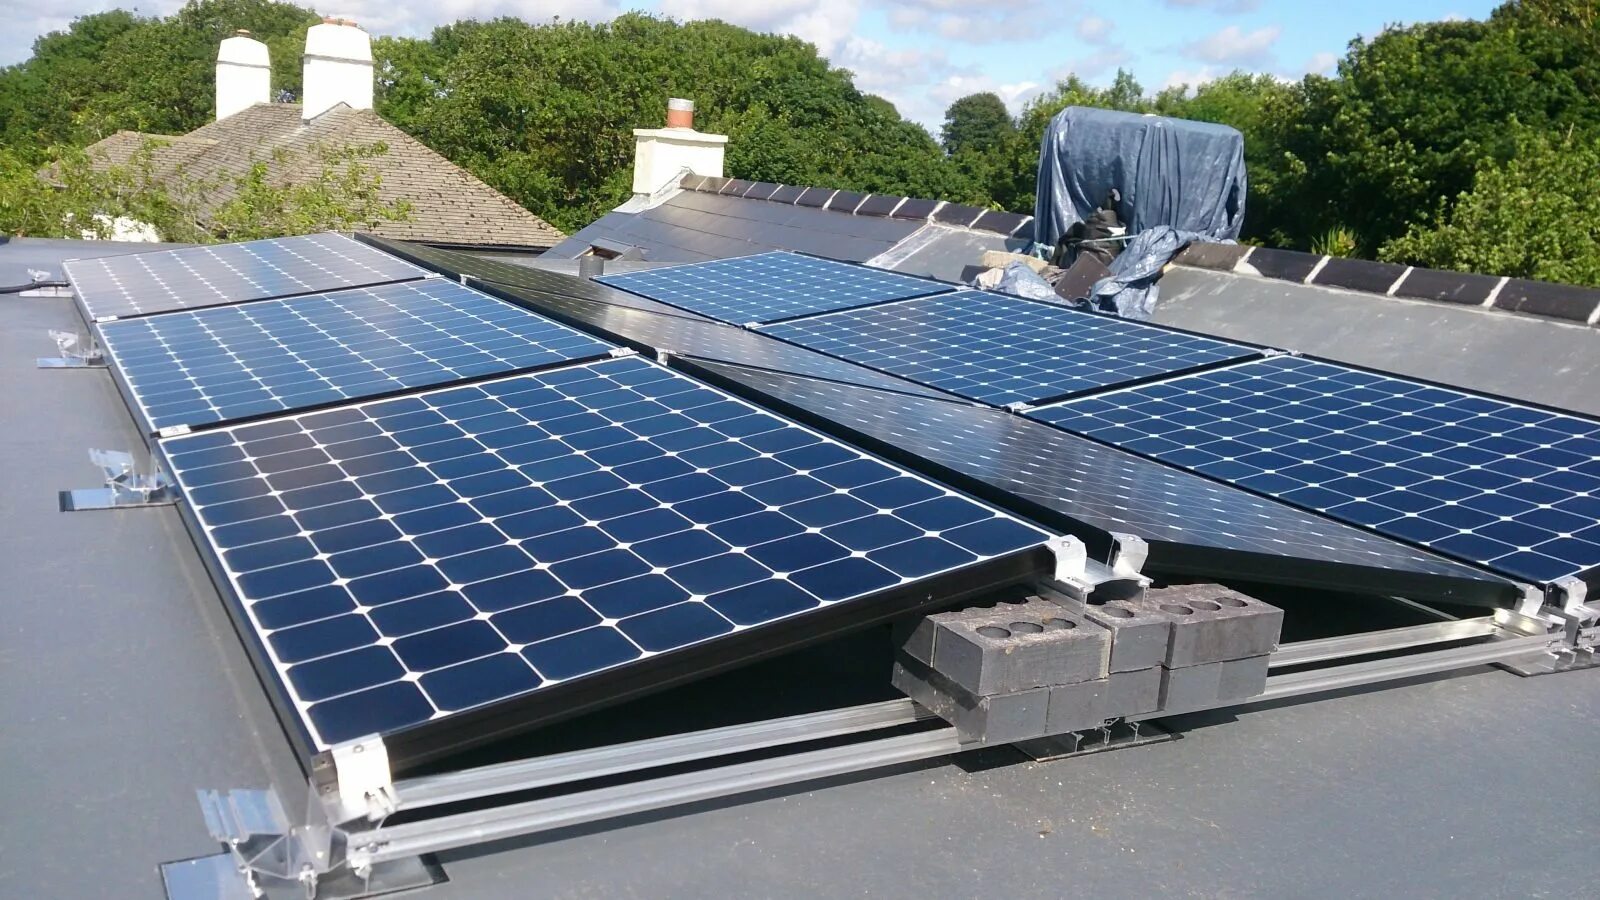 Солнечная панель Solar Roof. Солнечные батарея Solar Panel. Солнечная панель 180 Вт. Canadian Solar солнечные панели.